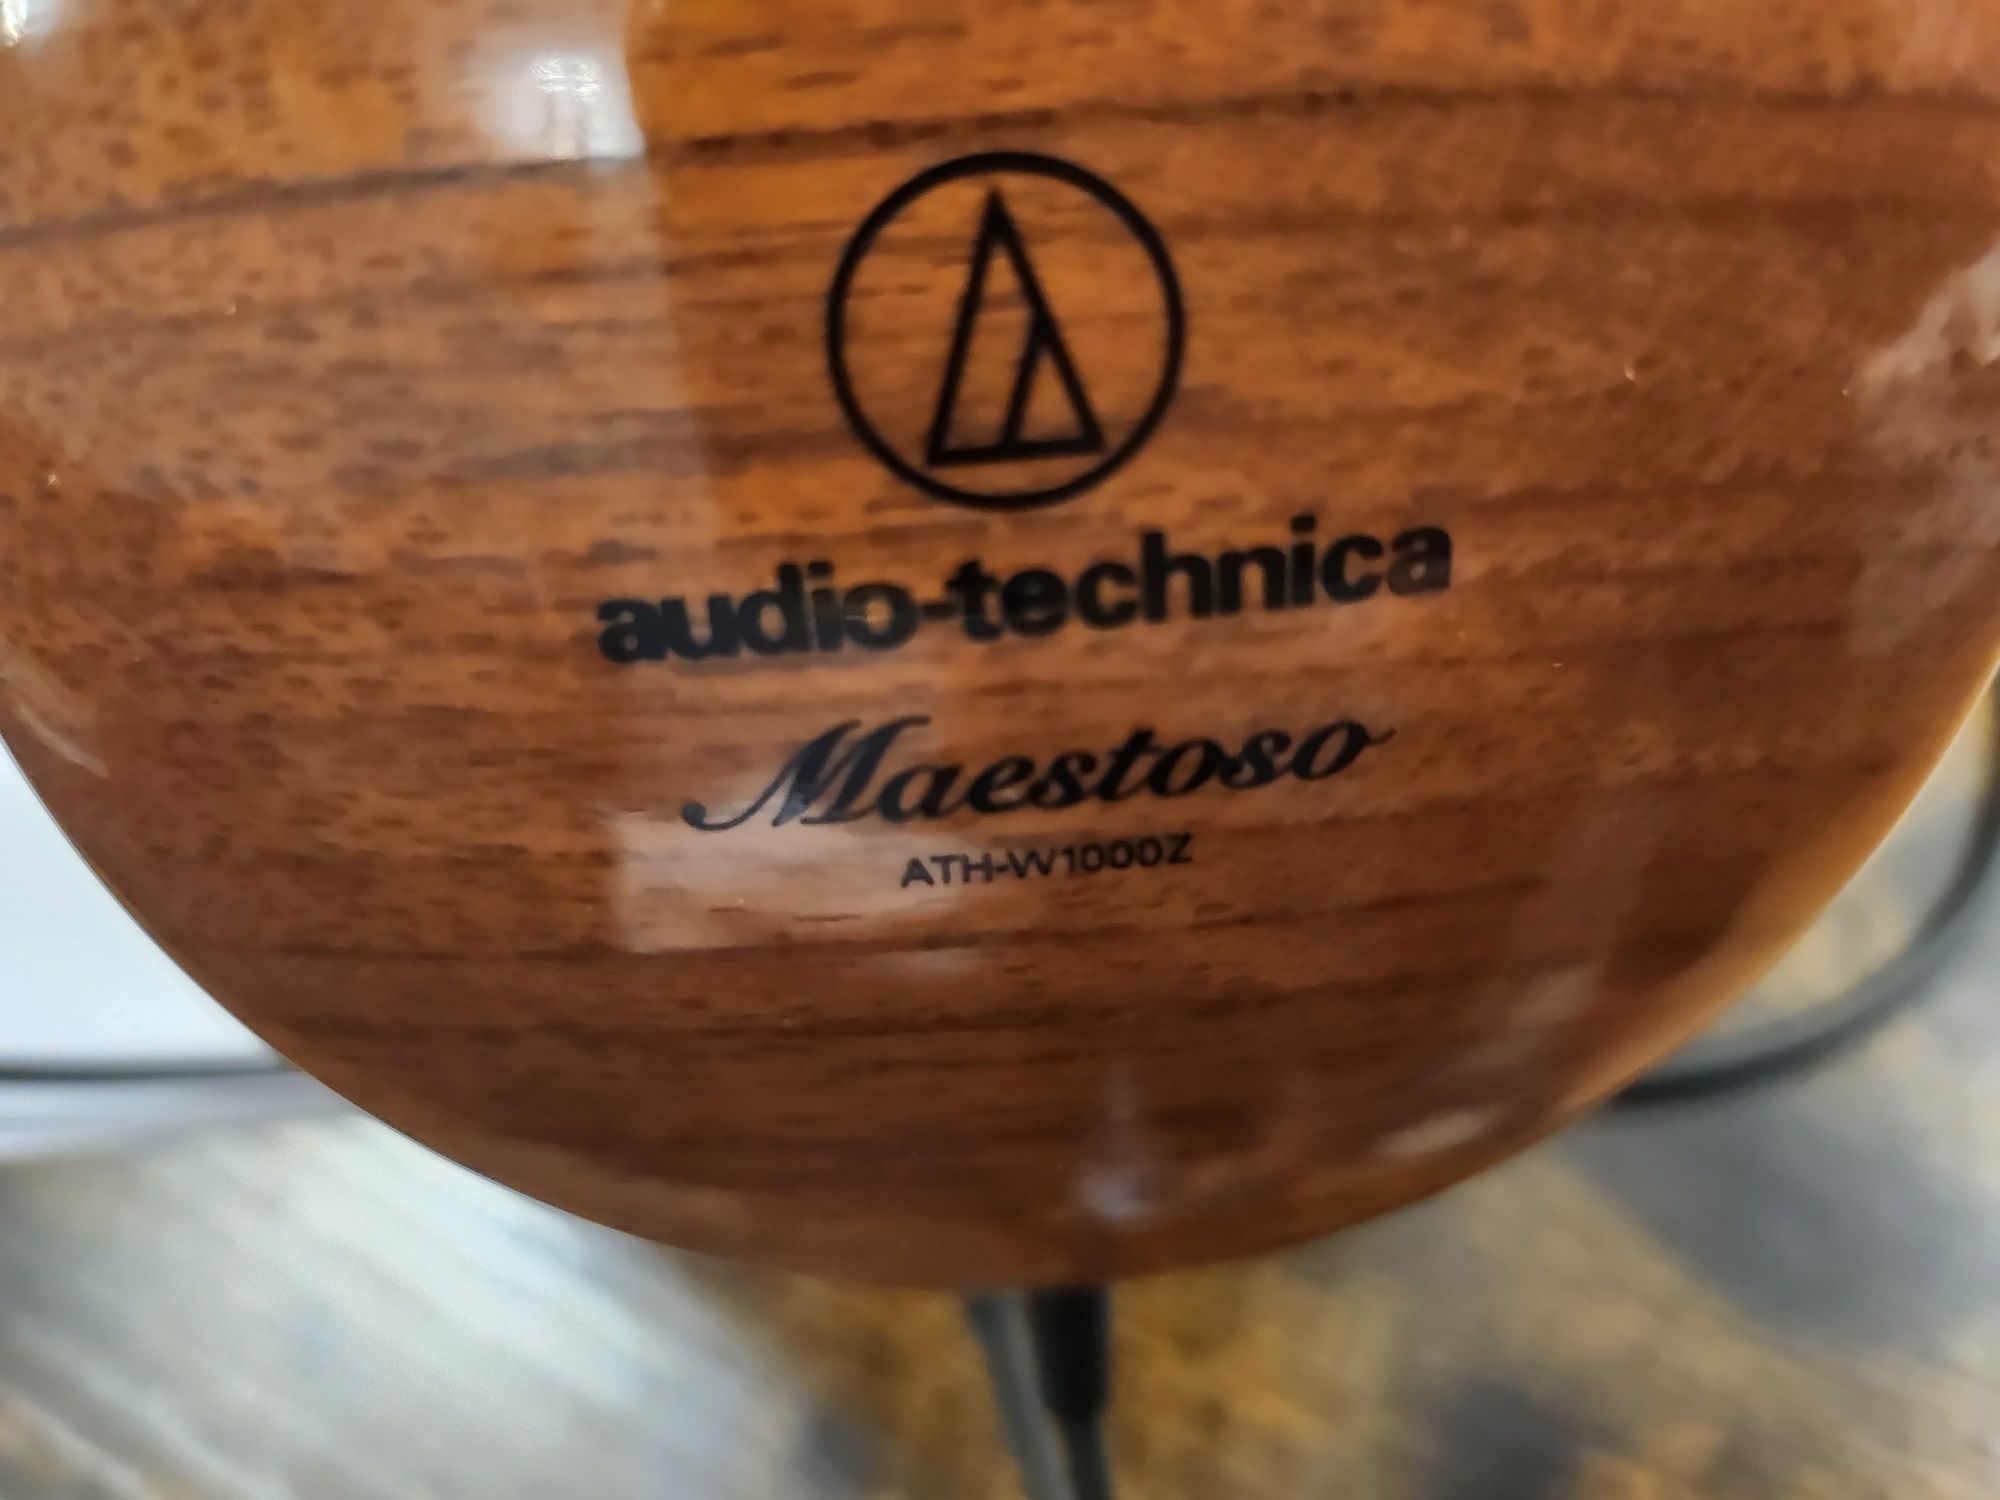 Słuchawki Audio-Technica ATH-W1000Z Maestoso.